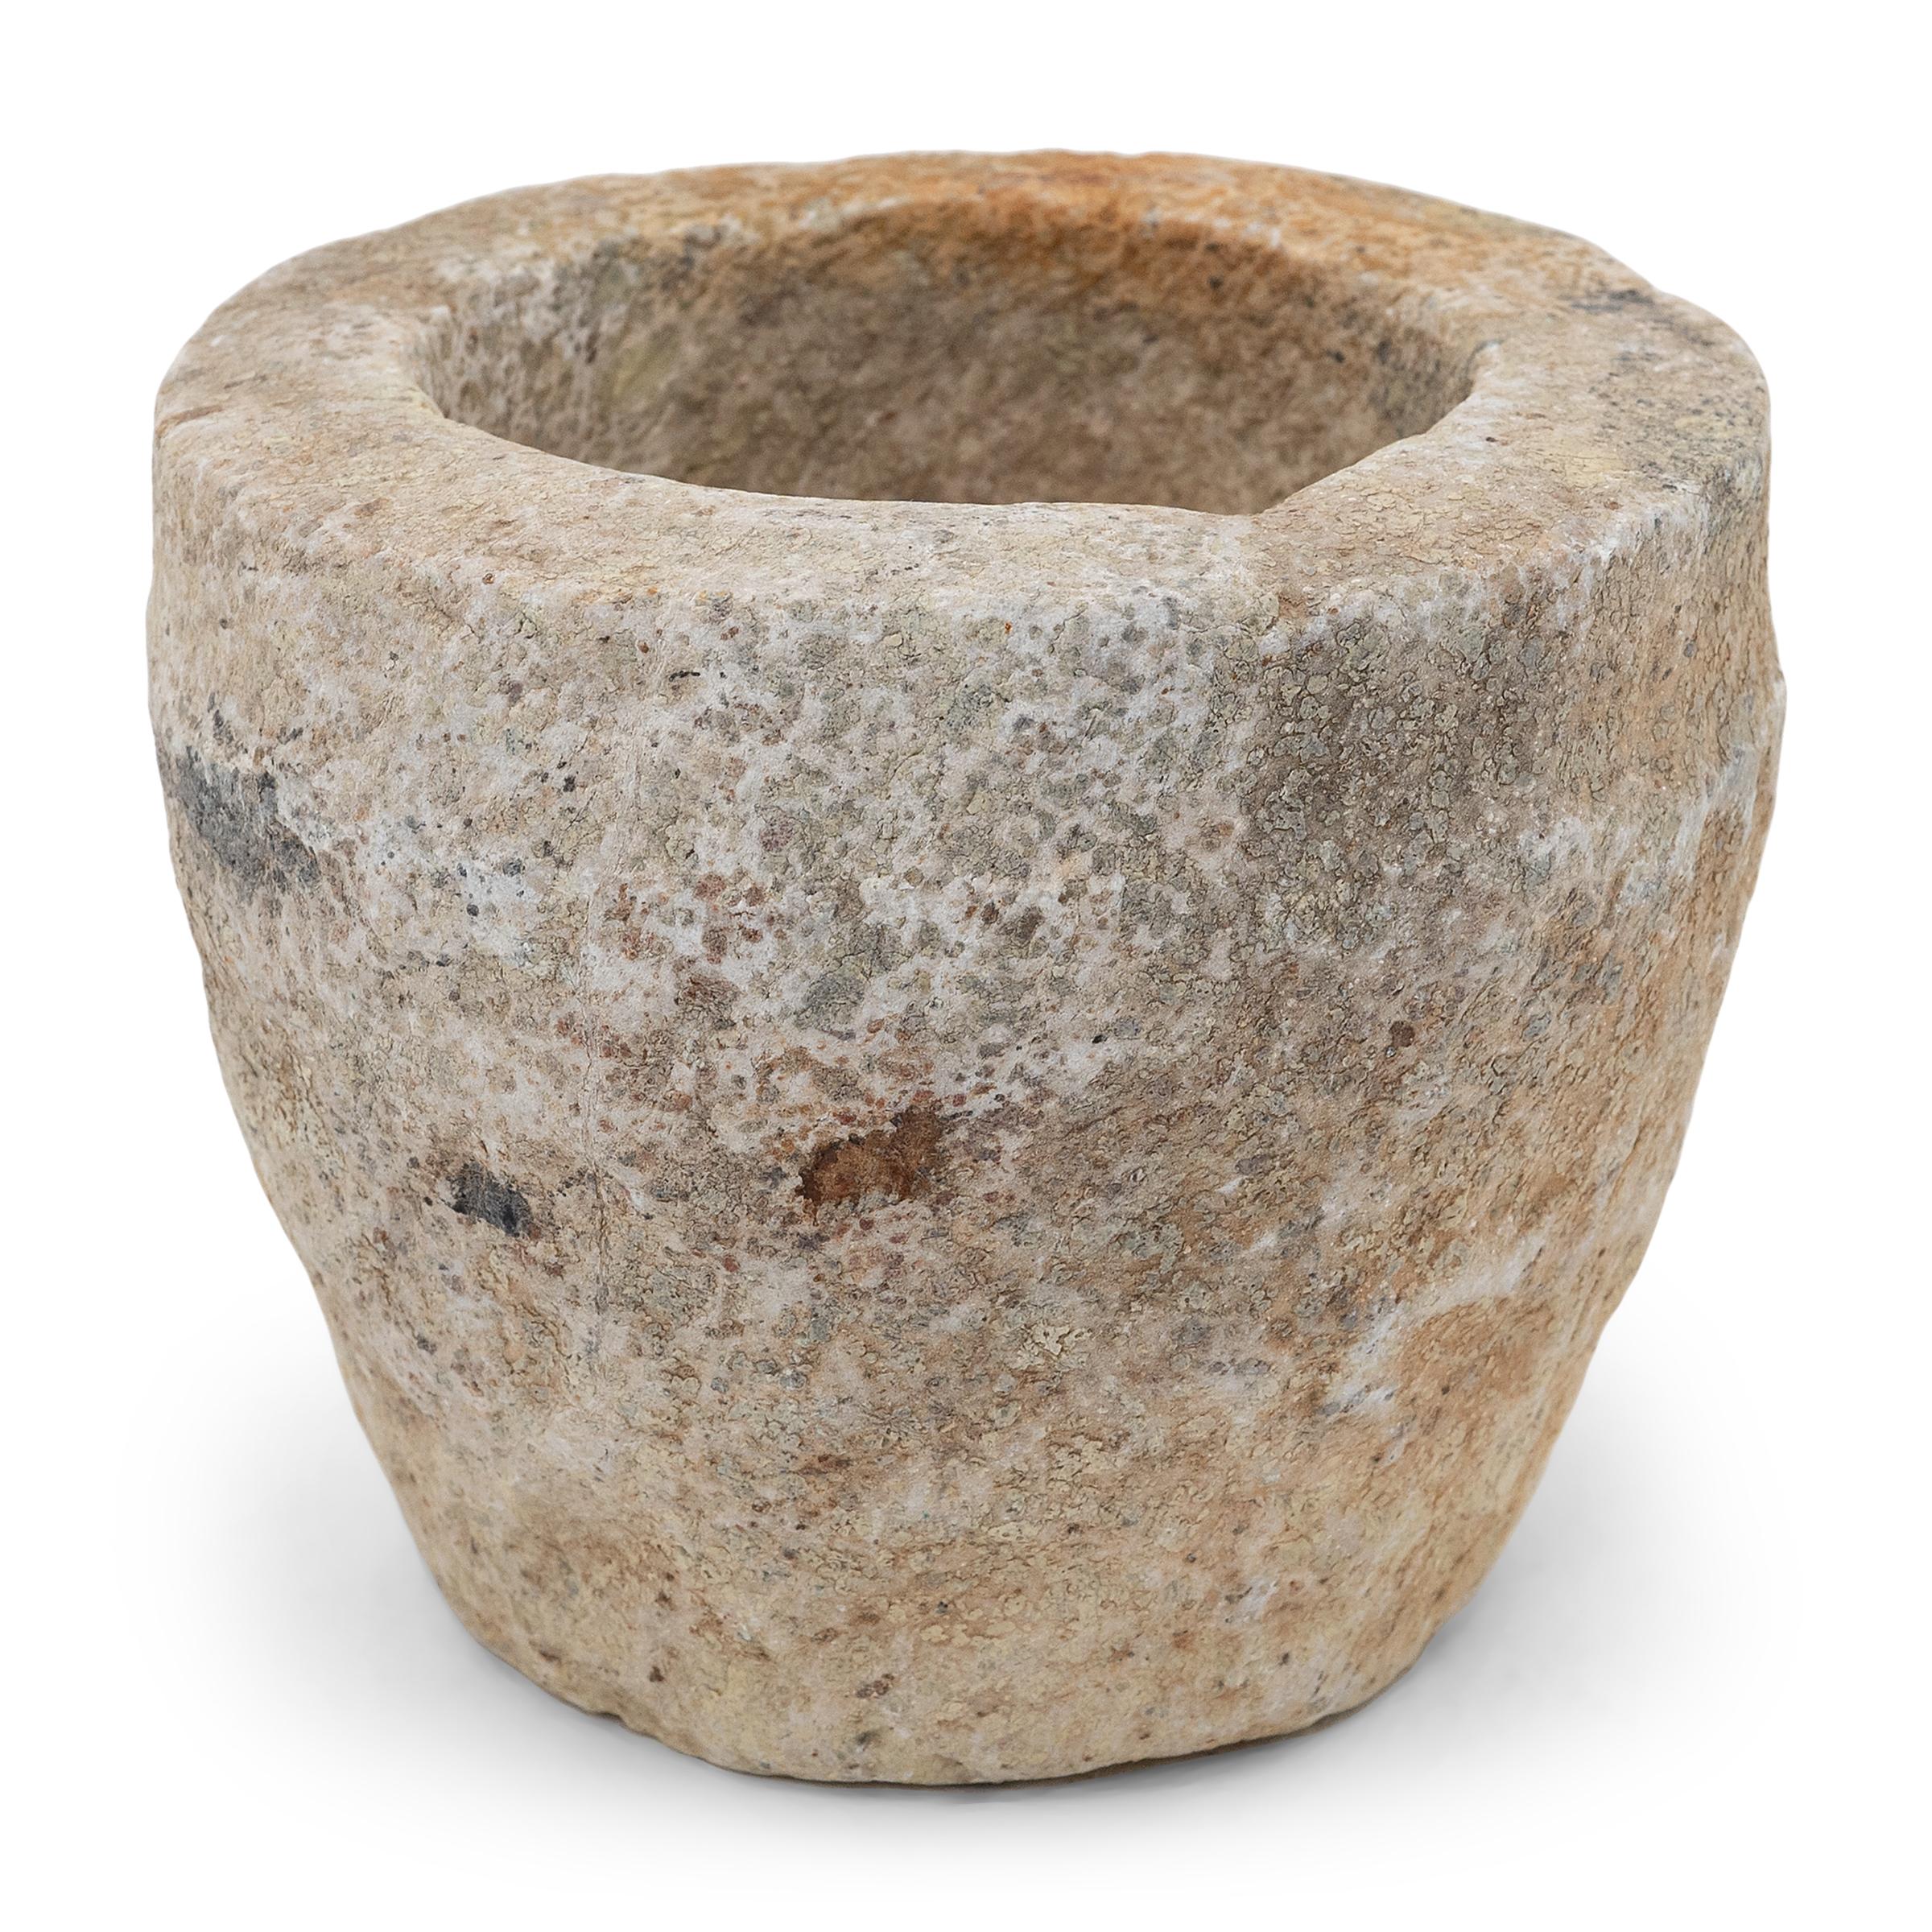 Sculpté dans un seul bloc de calcaire, ce récipient en pierre est un mortier datant du début du XIXe siècle, utilisé autrefois pour broyer des épices, des herbes et d'autres condiments. L'extérieur rustique, ciselé à la main, est magnifiquement usé